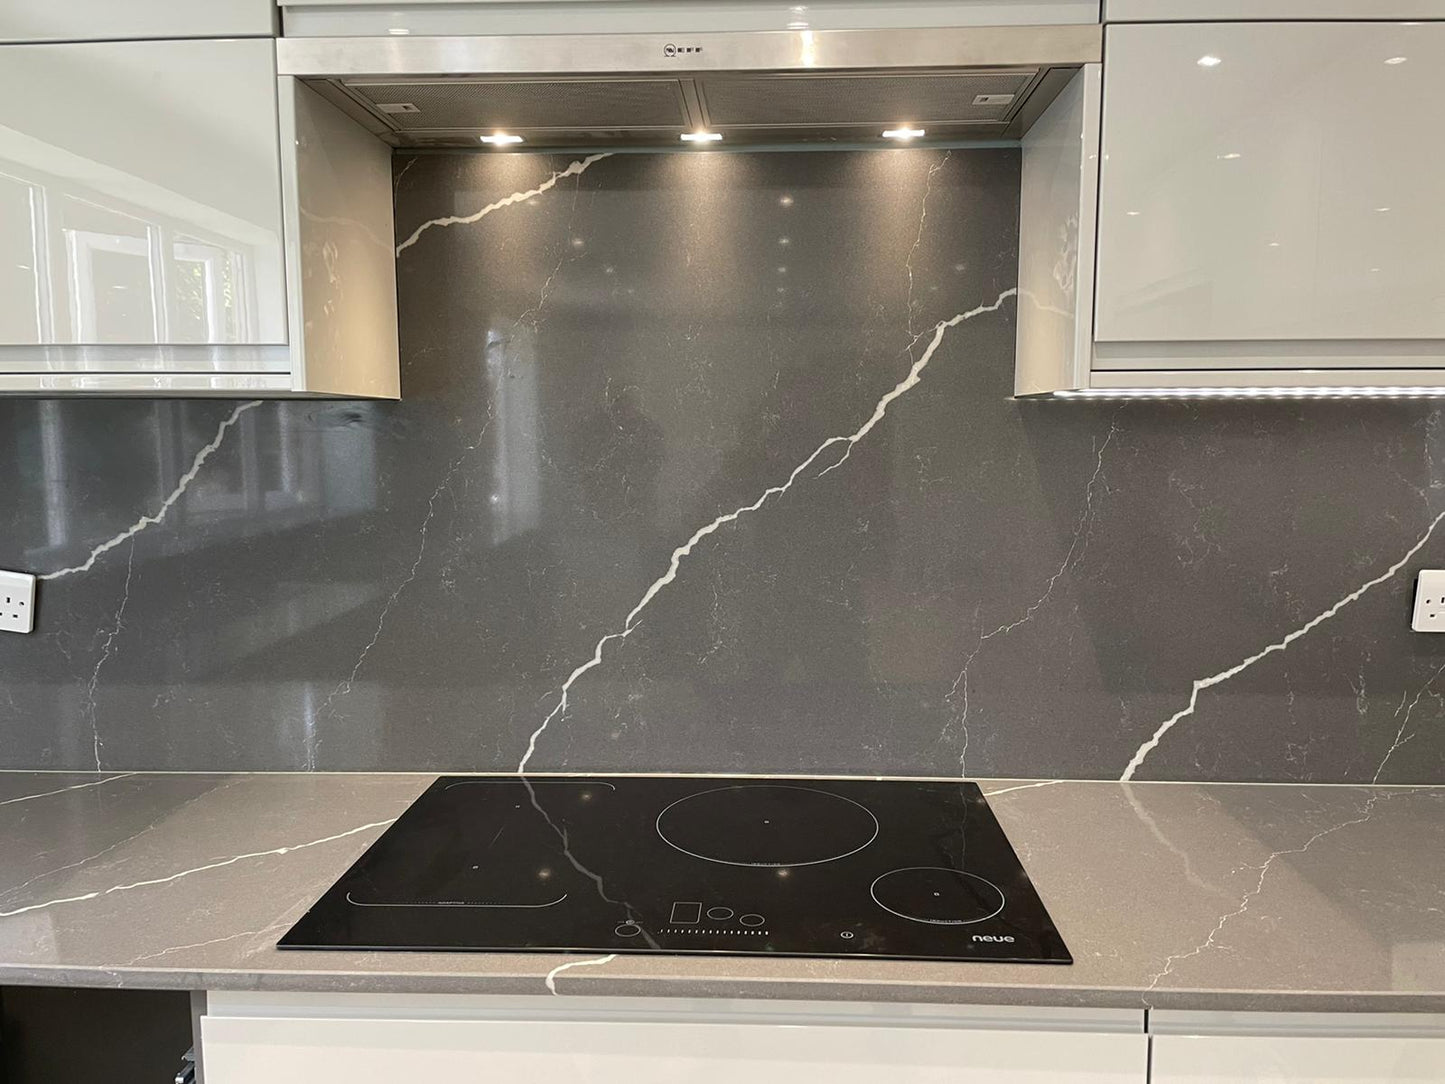 Unistone Pietra Grey Quartz kitchen worktops with white veins through it